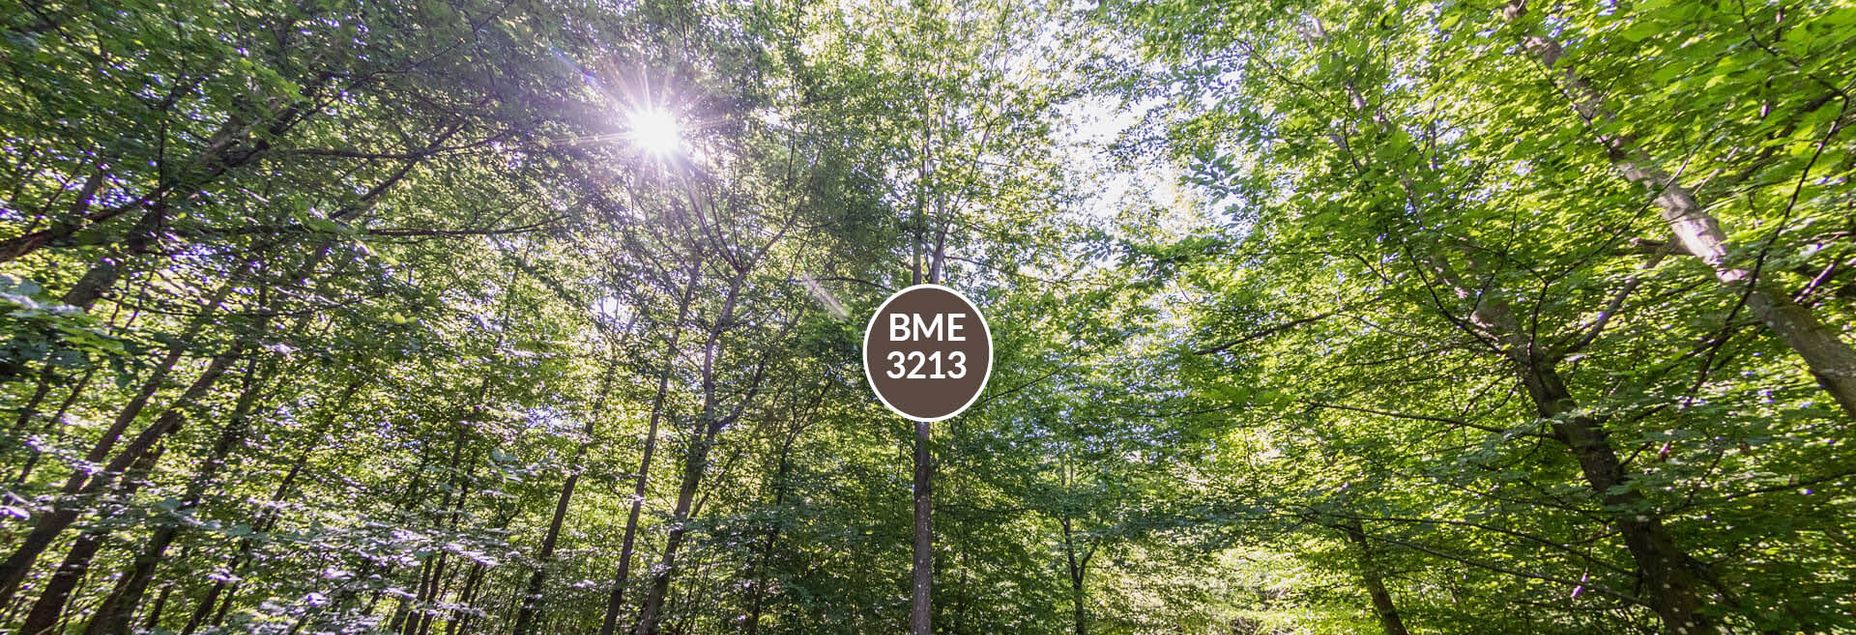 Baum BME 3213 - Fisheyeperspektive